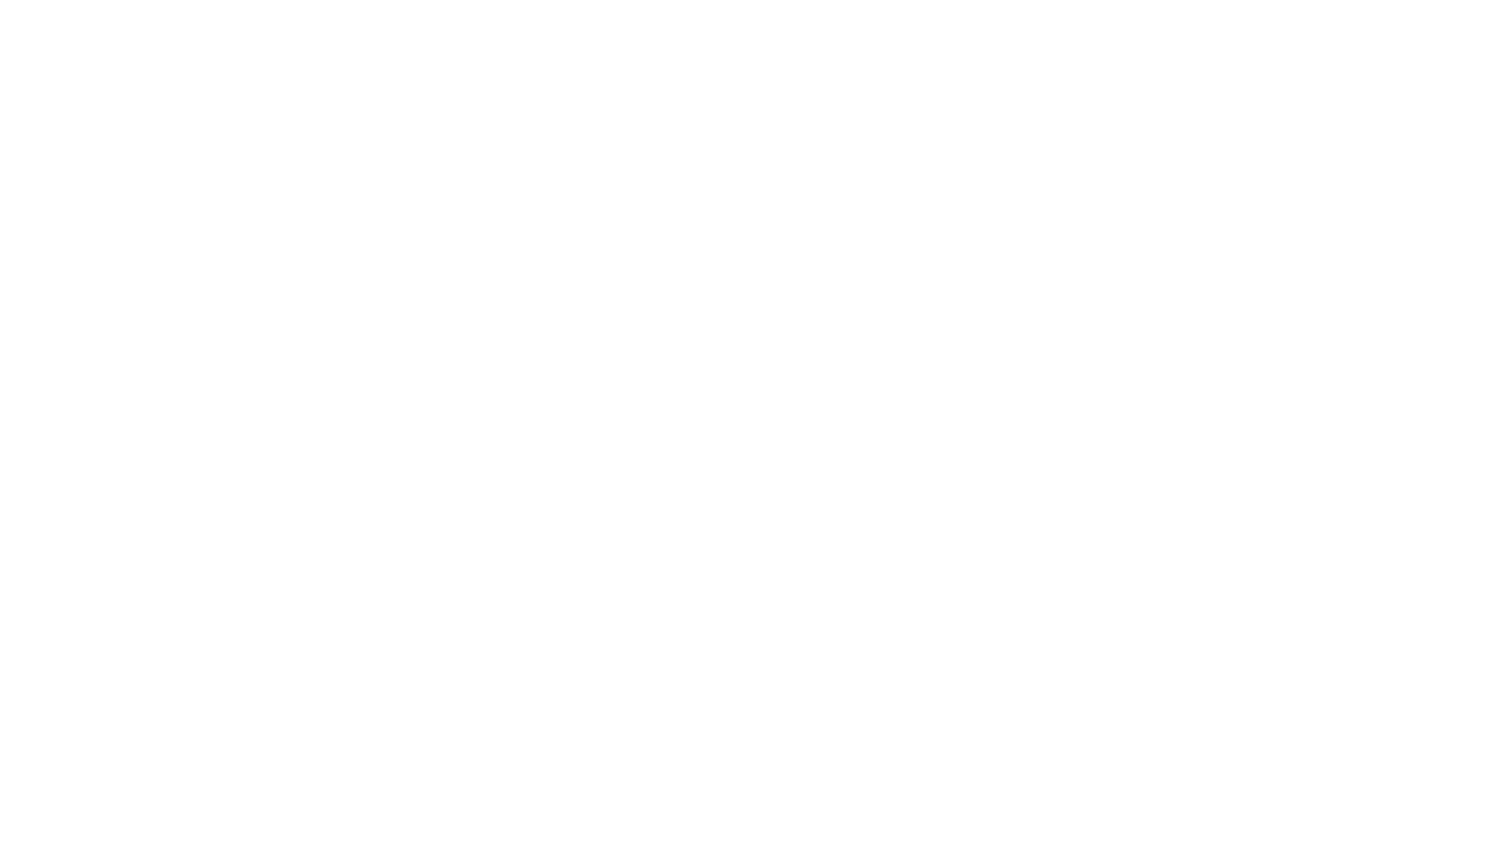 Hayden Hertzler Photography